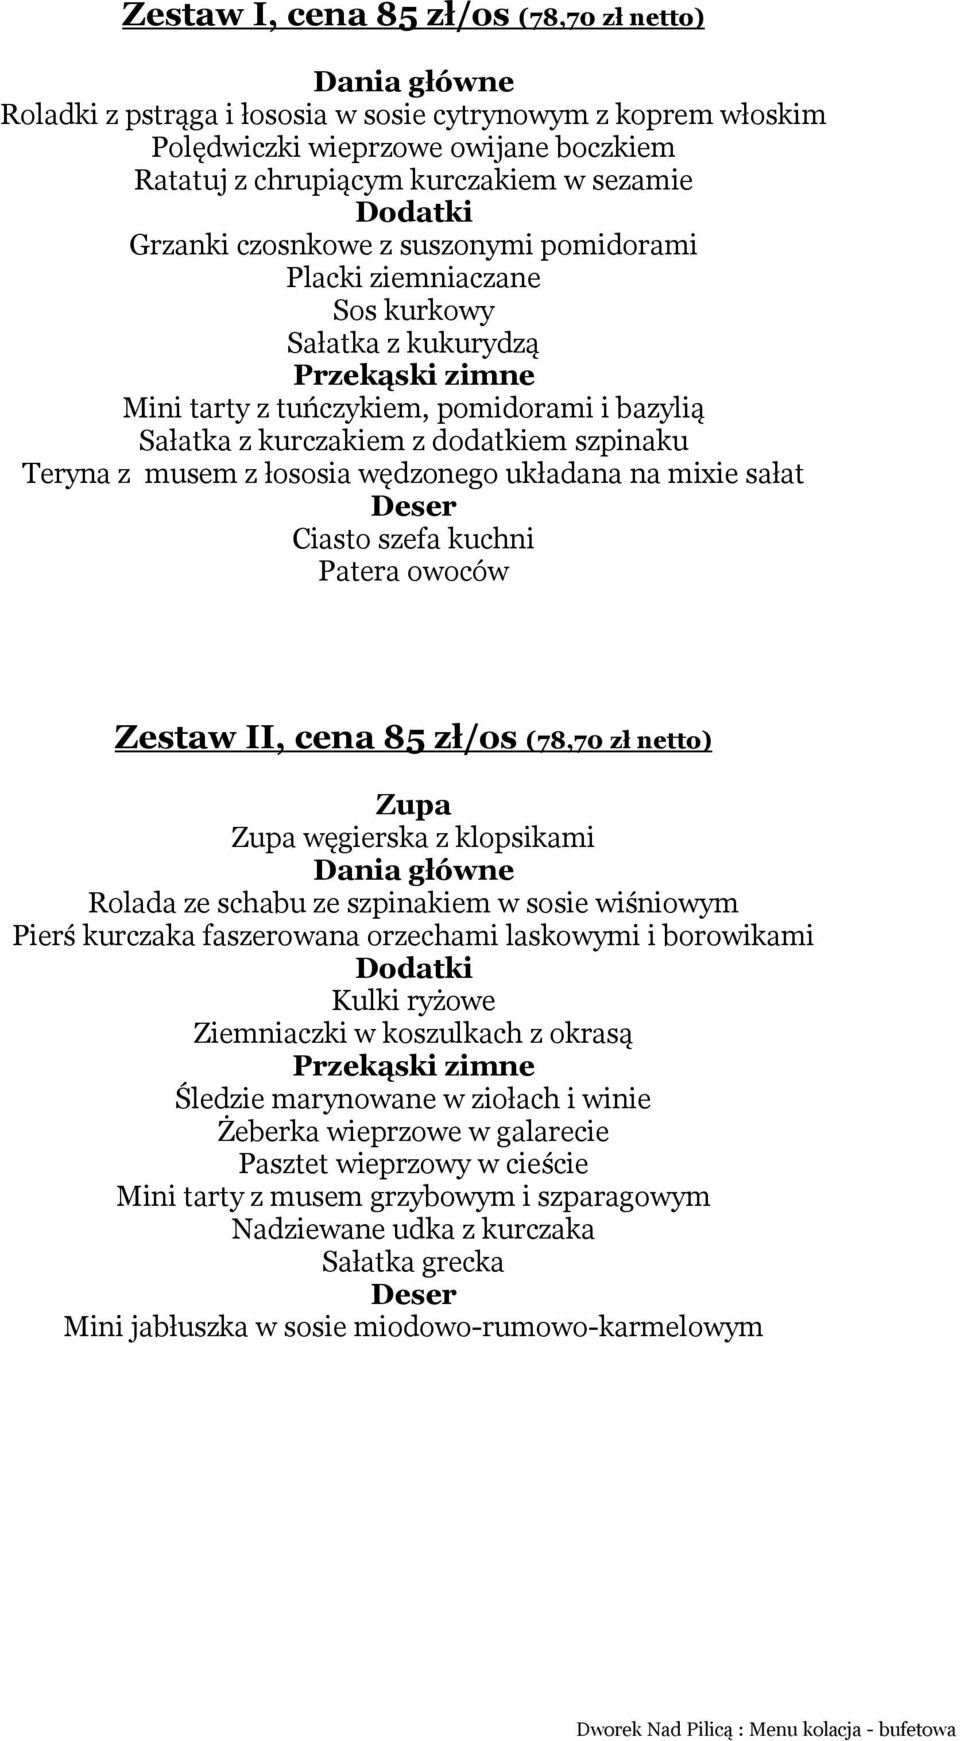 mixie sałat Ciasto szefa kuchni Zestaw II, cena 85 zł/os (78,70 zł netto) węgierska z klopsikami Rolada ze schabu ze szpinakiem w sosie wiśniowym Pierś kurczaka faszerowana orzechami laskowymi i